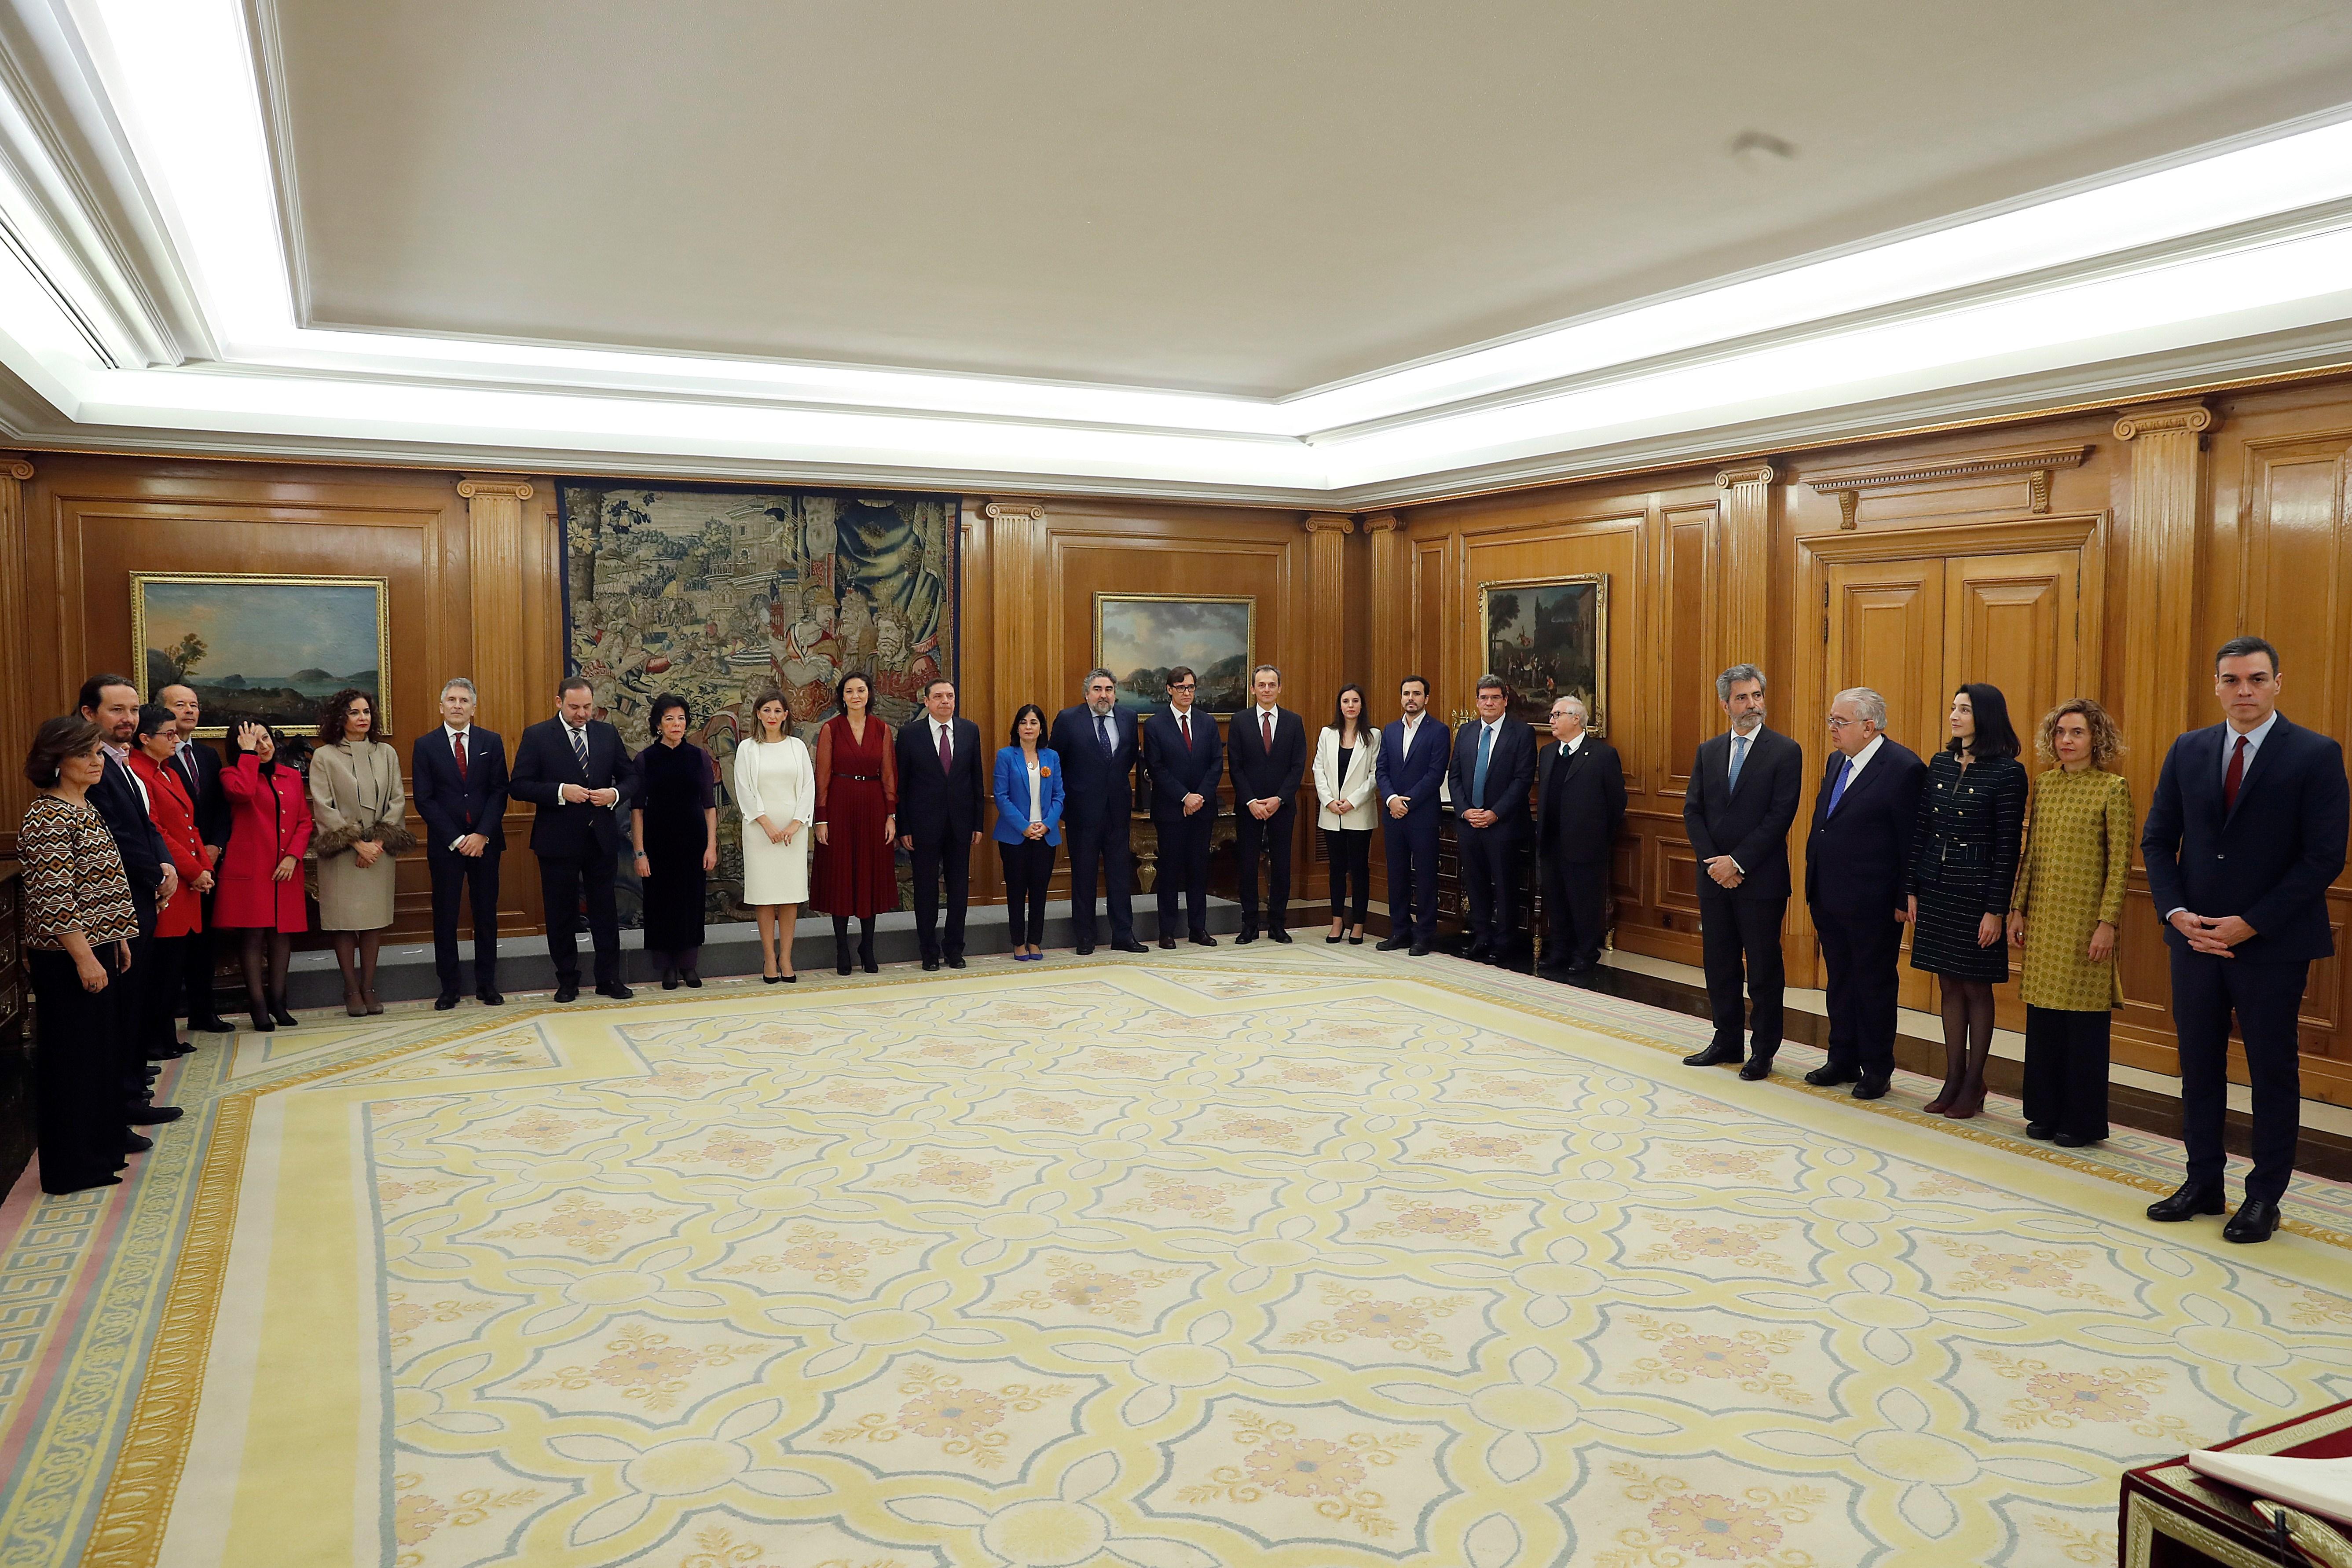 El presidente del Gobierno Pedro Sánchez (d) preside la jura de ministros de su nuevo gobierno durante un acto celebrado en el Palacio de Zarzuela en Madrid a 13 de enero de 2020 